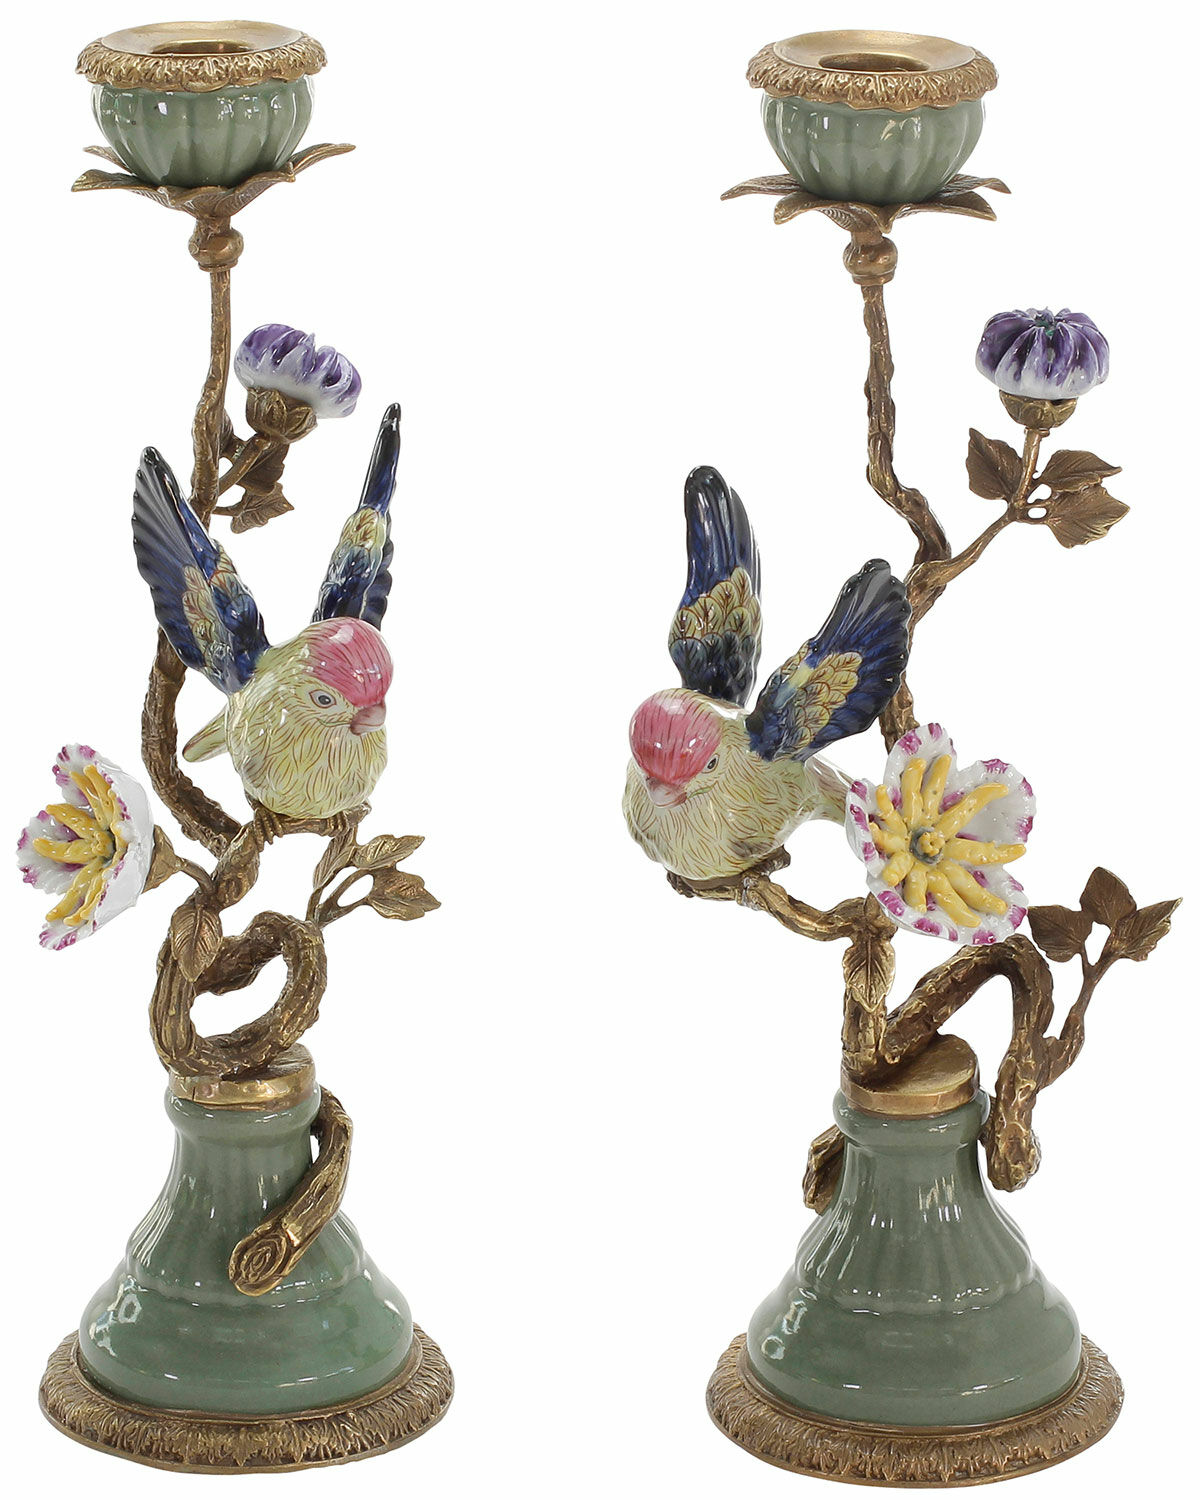 Kerzenleuchterpaar "Coraline" im historischen Stil, Porzellan handbemalt